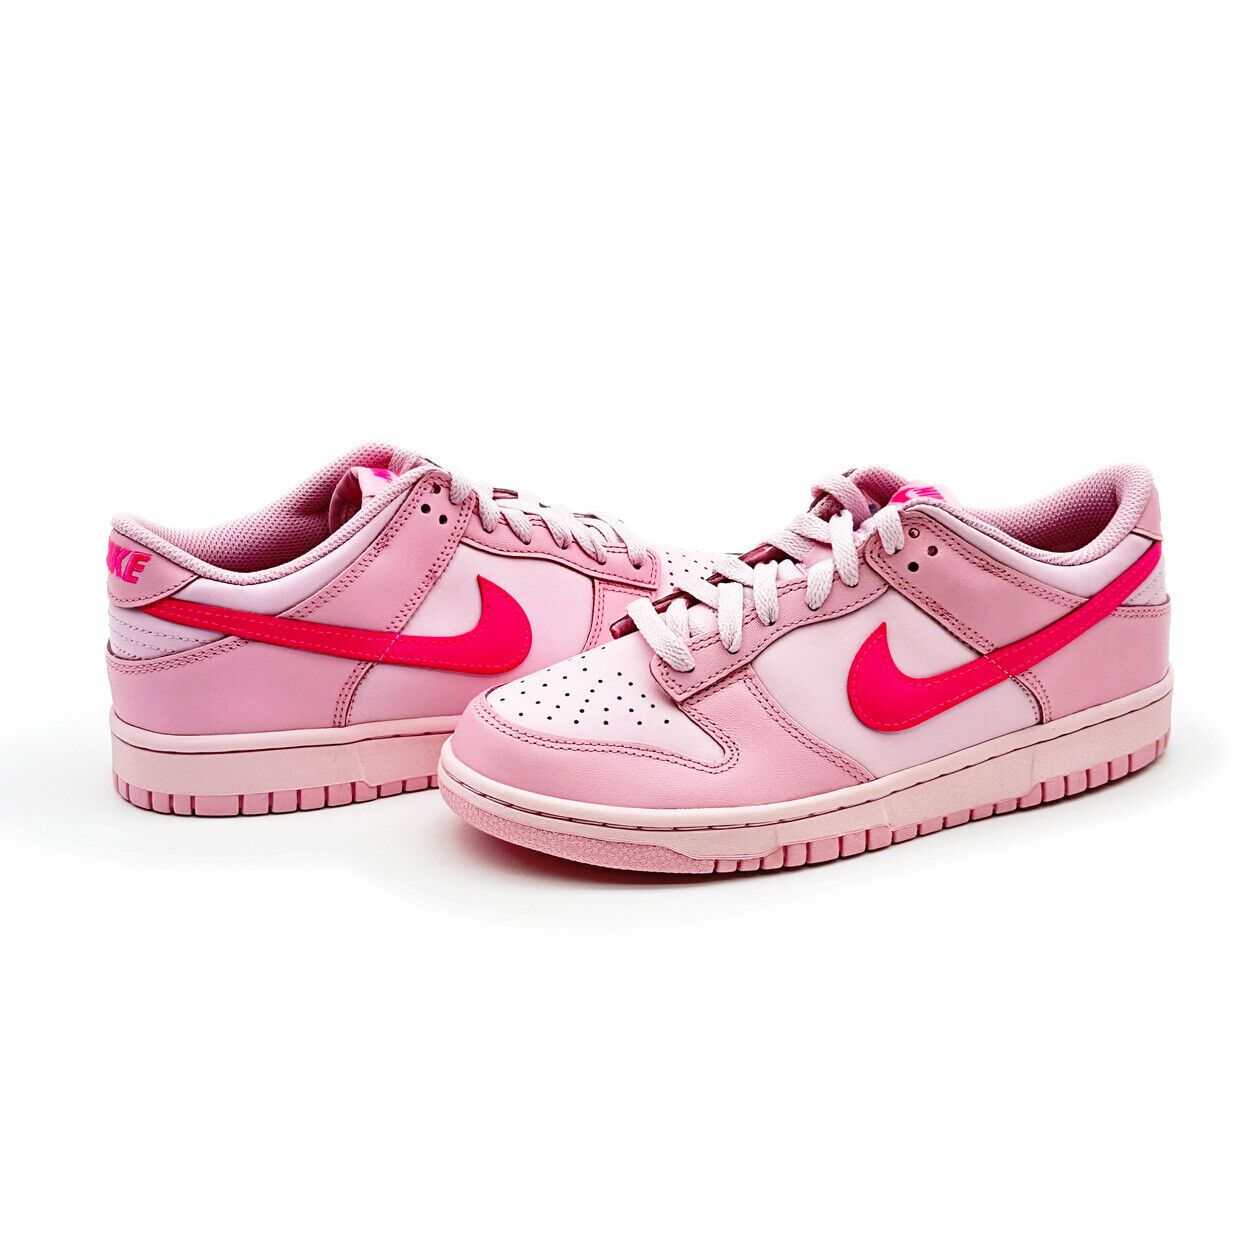 Barbie pink Nike Dunks, for sale on eBay